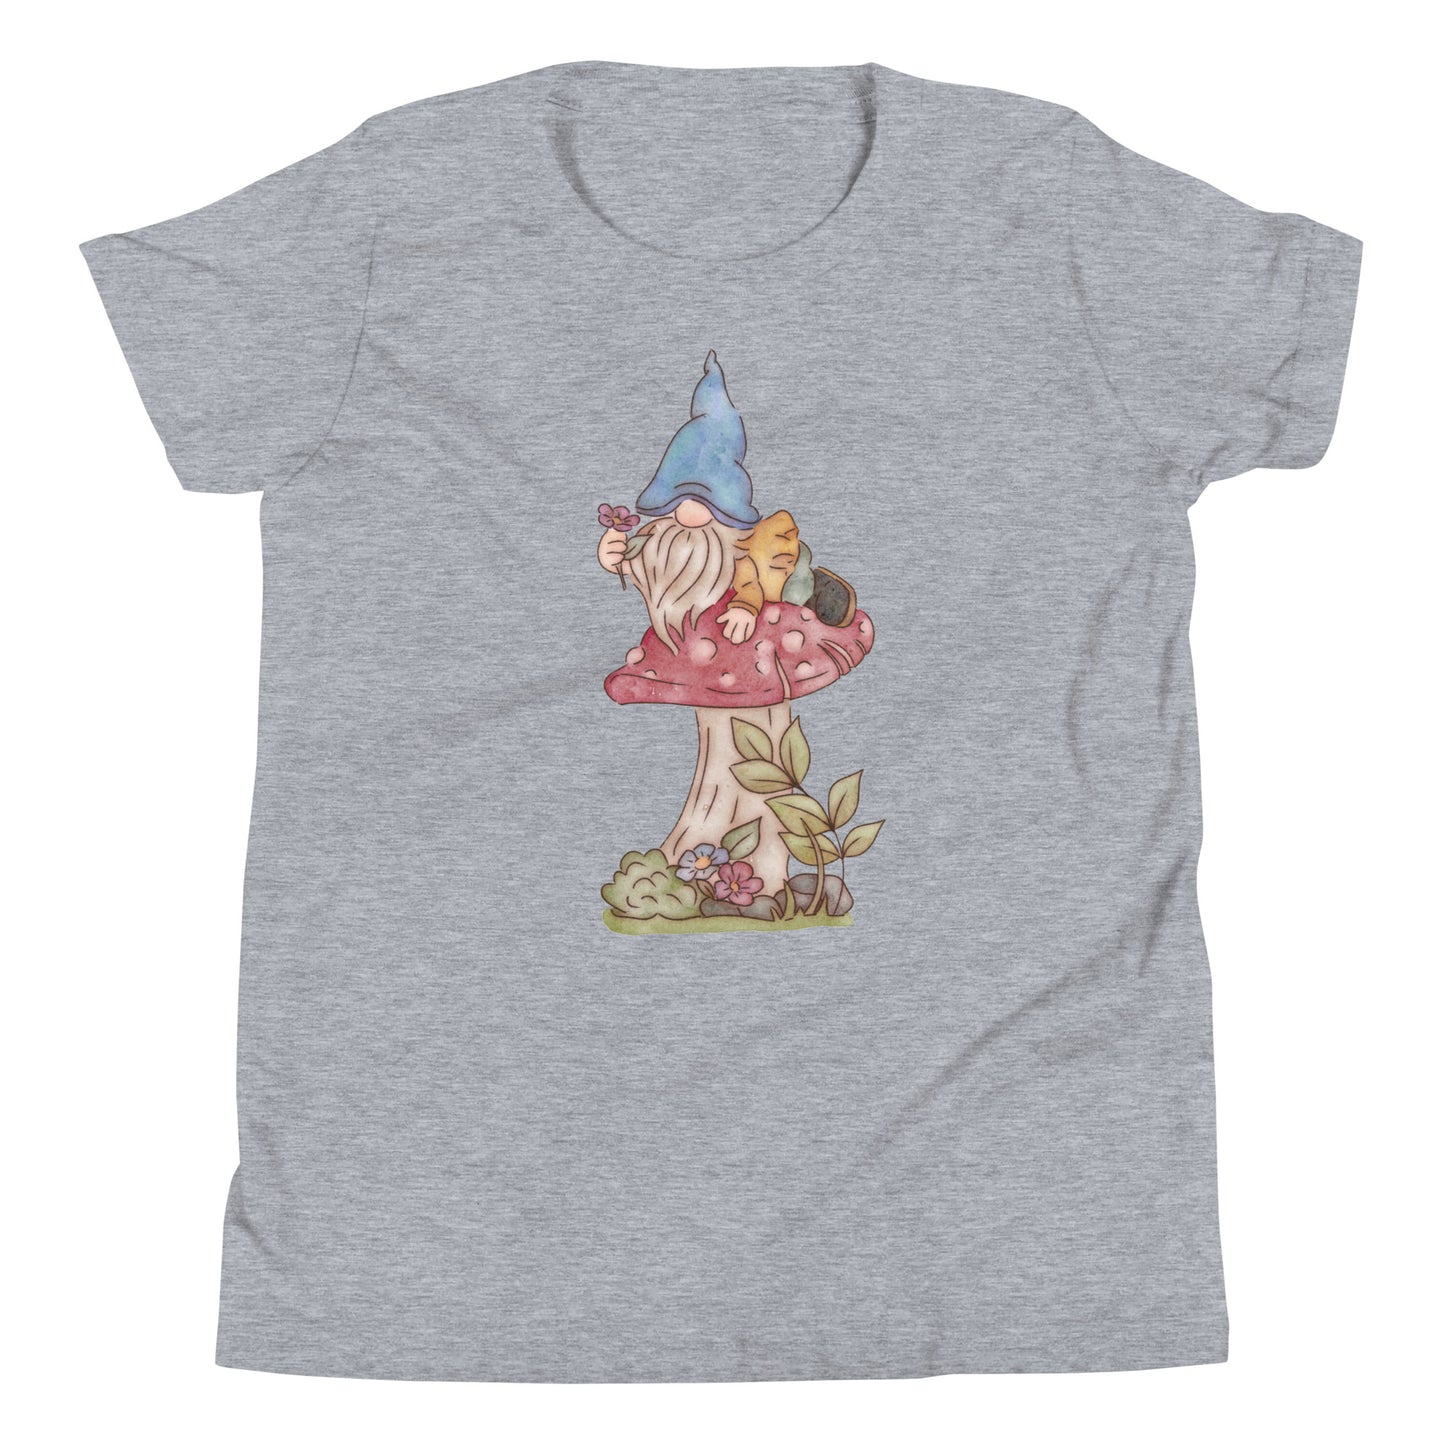 Mushroom Flower Gnome : Kids Tee